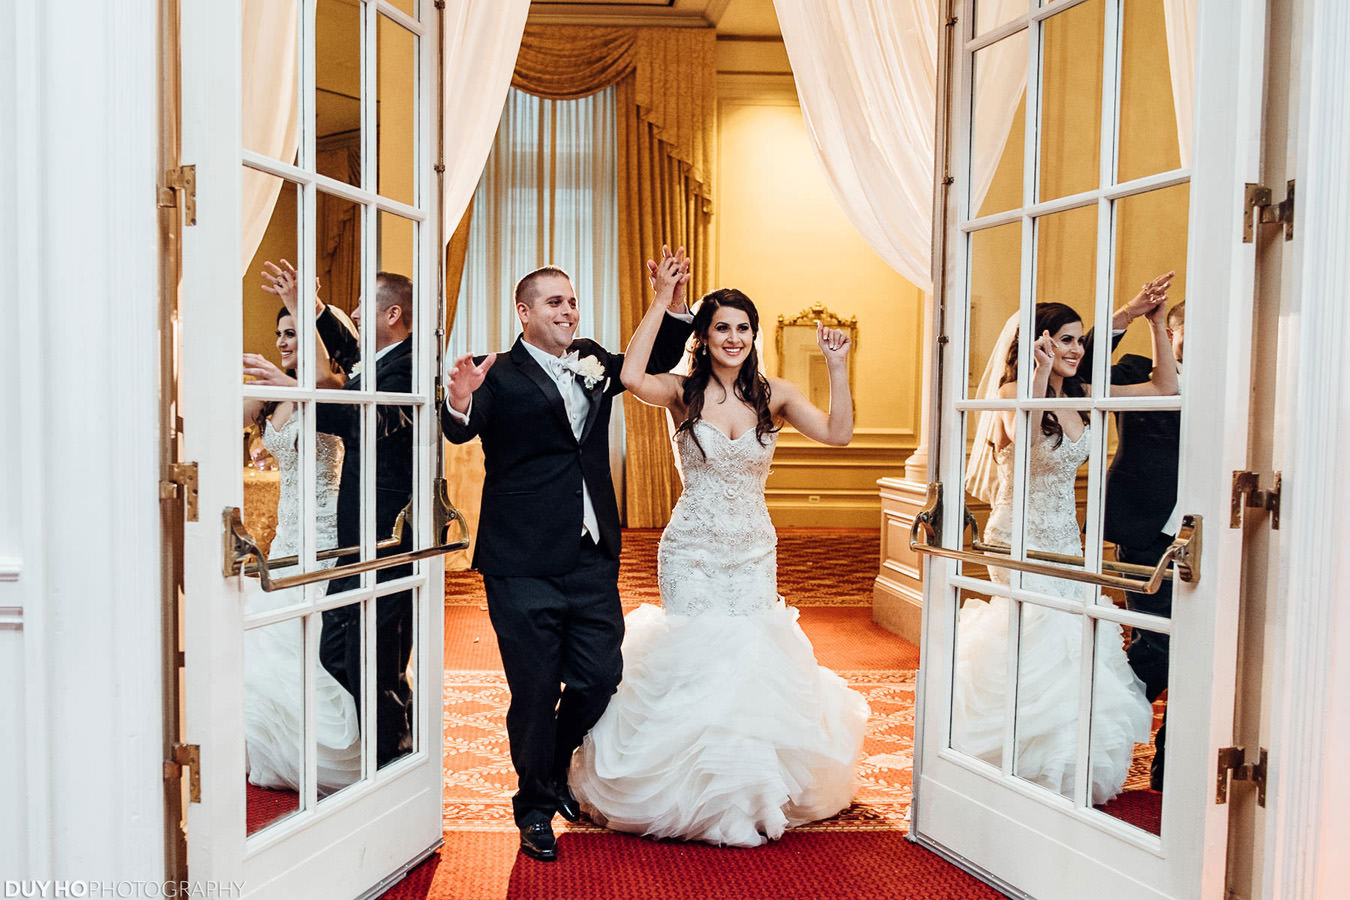 Dana + Yousef | Palace Hotel Wedding Photo